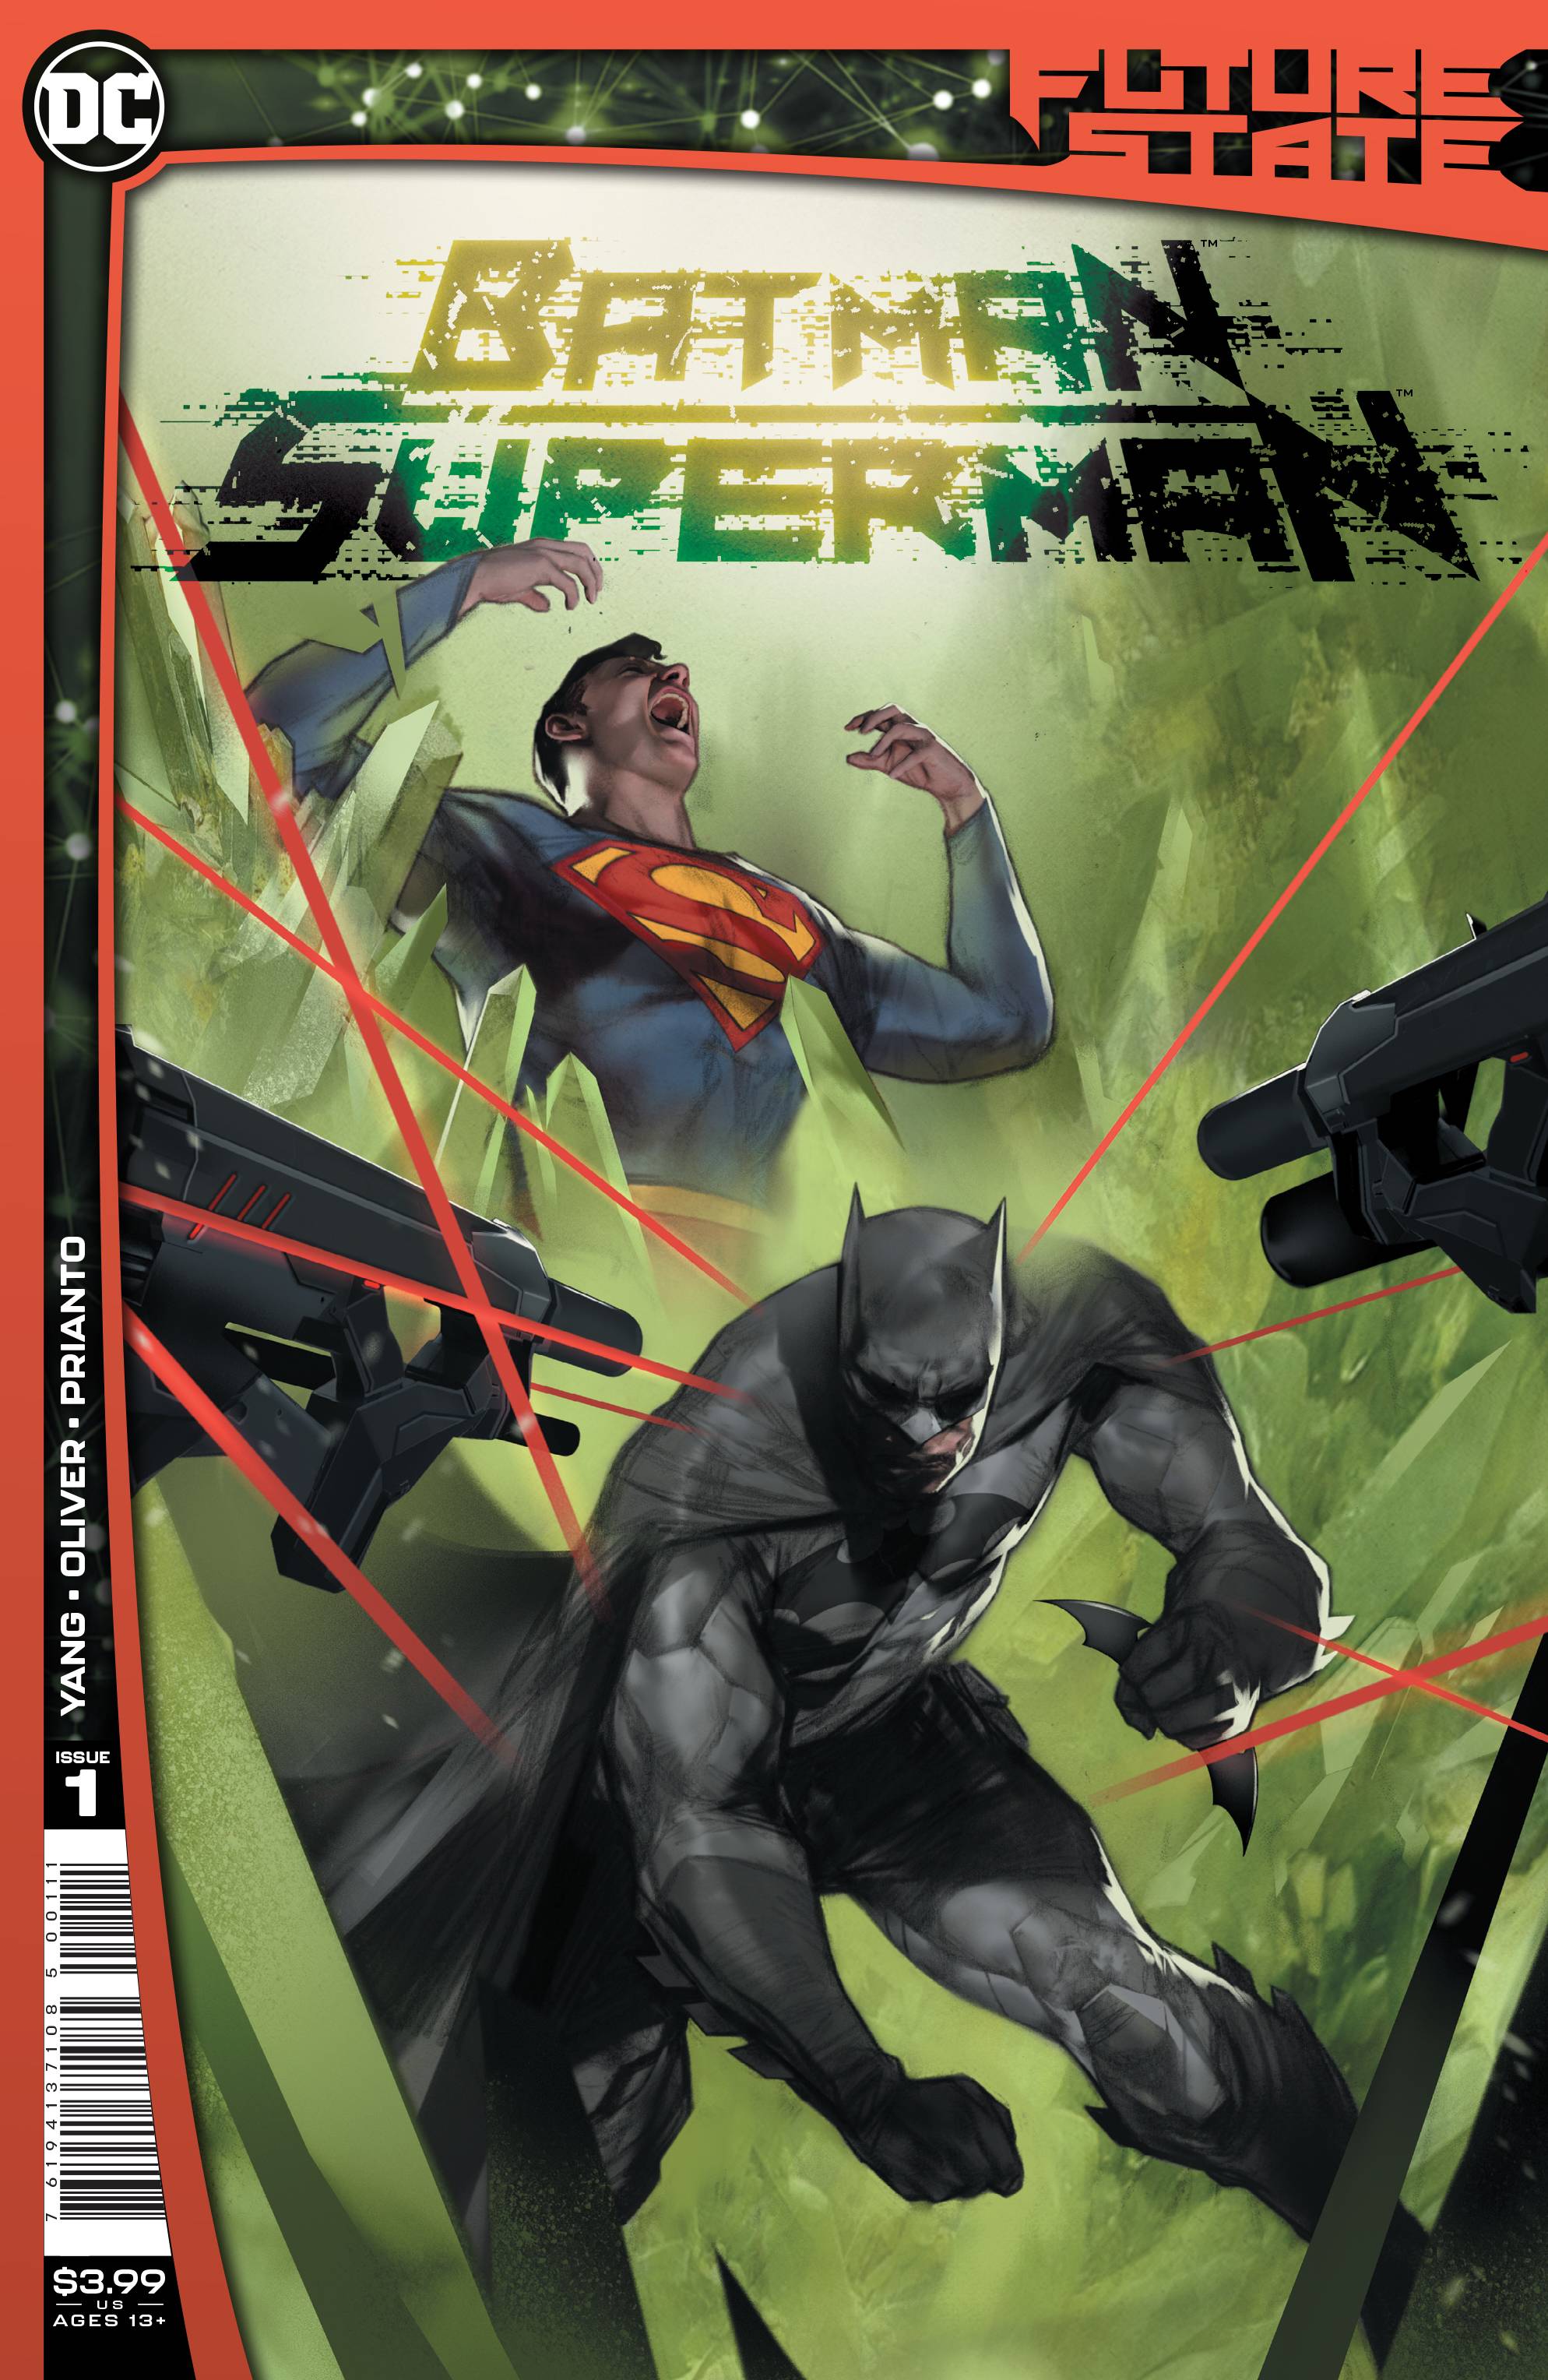 SUPERMAN #1A WK04 FUTURE STATE BATMAN PREORDER JAN 27TH 